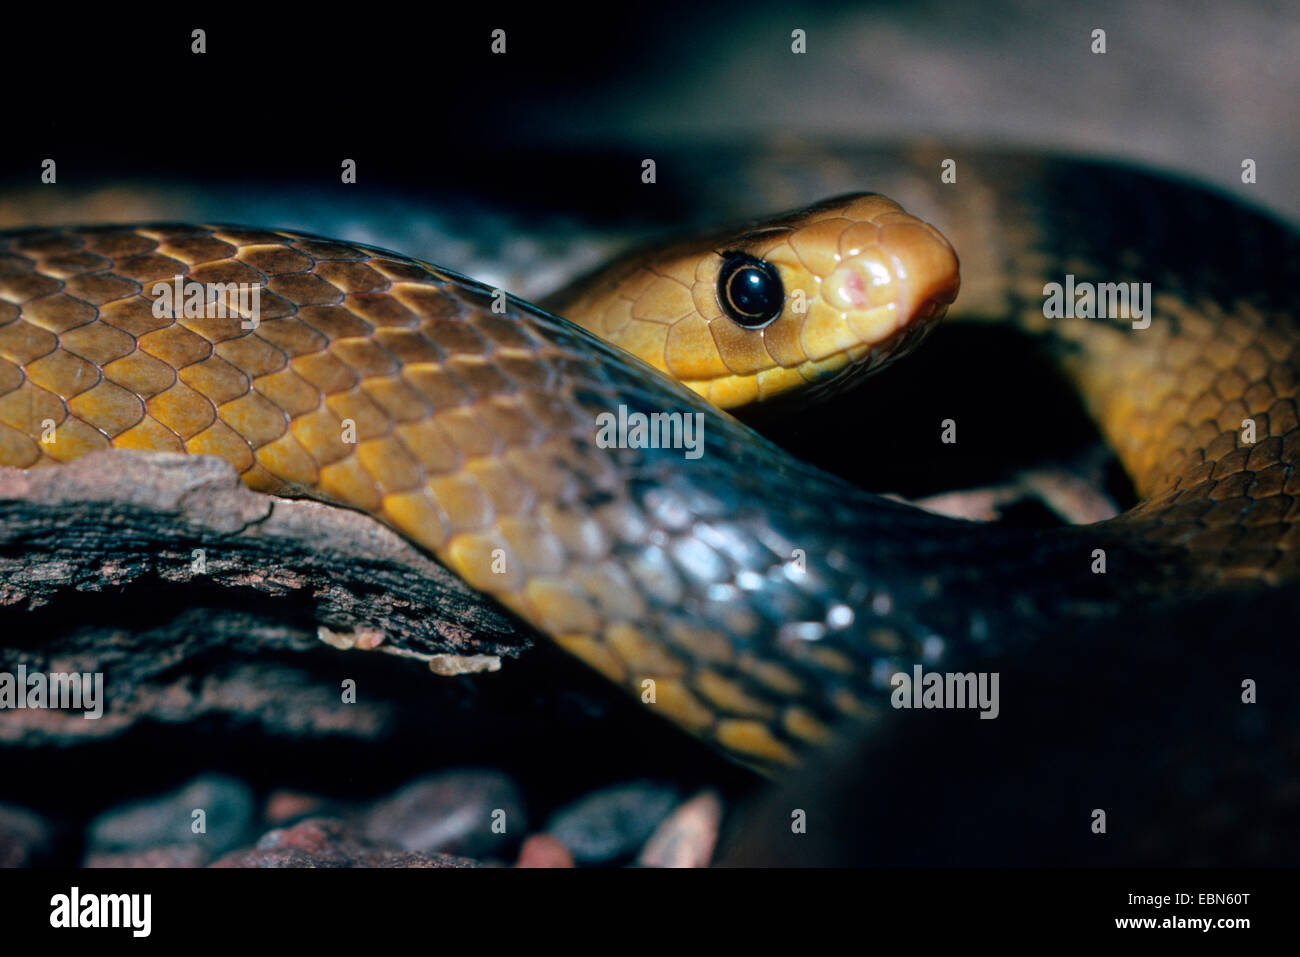 Western brown snake (Pseudonaja nuchalis), Australia, Australia serpientes venenosas Foto de stock